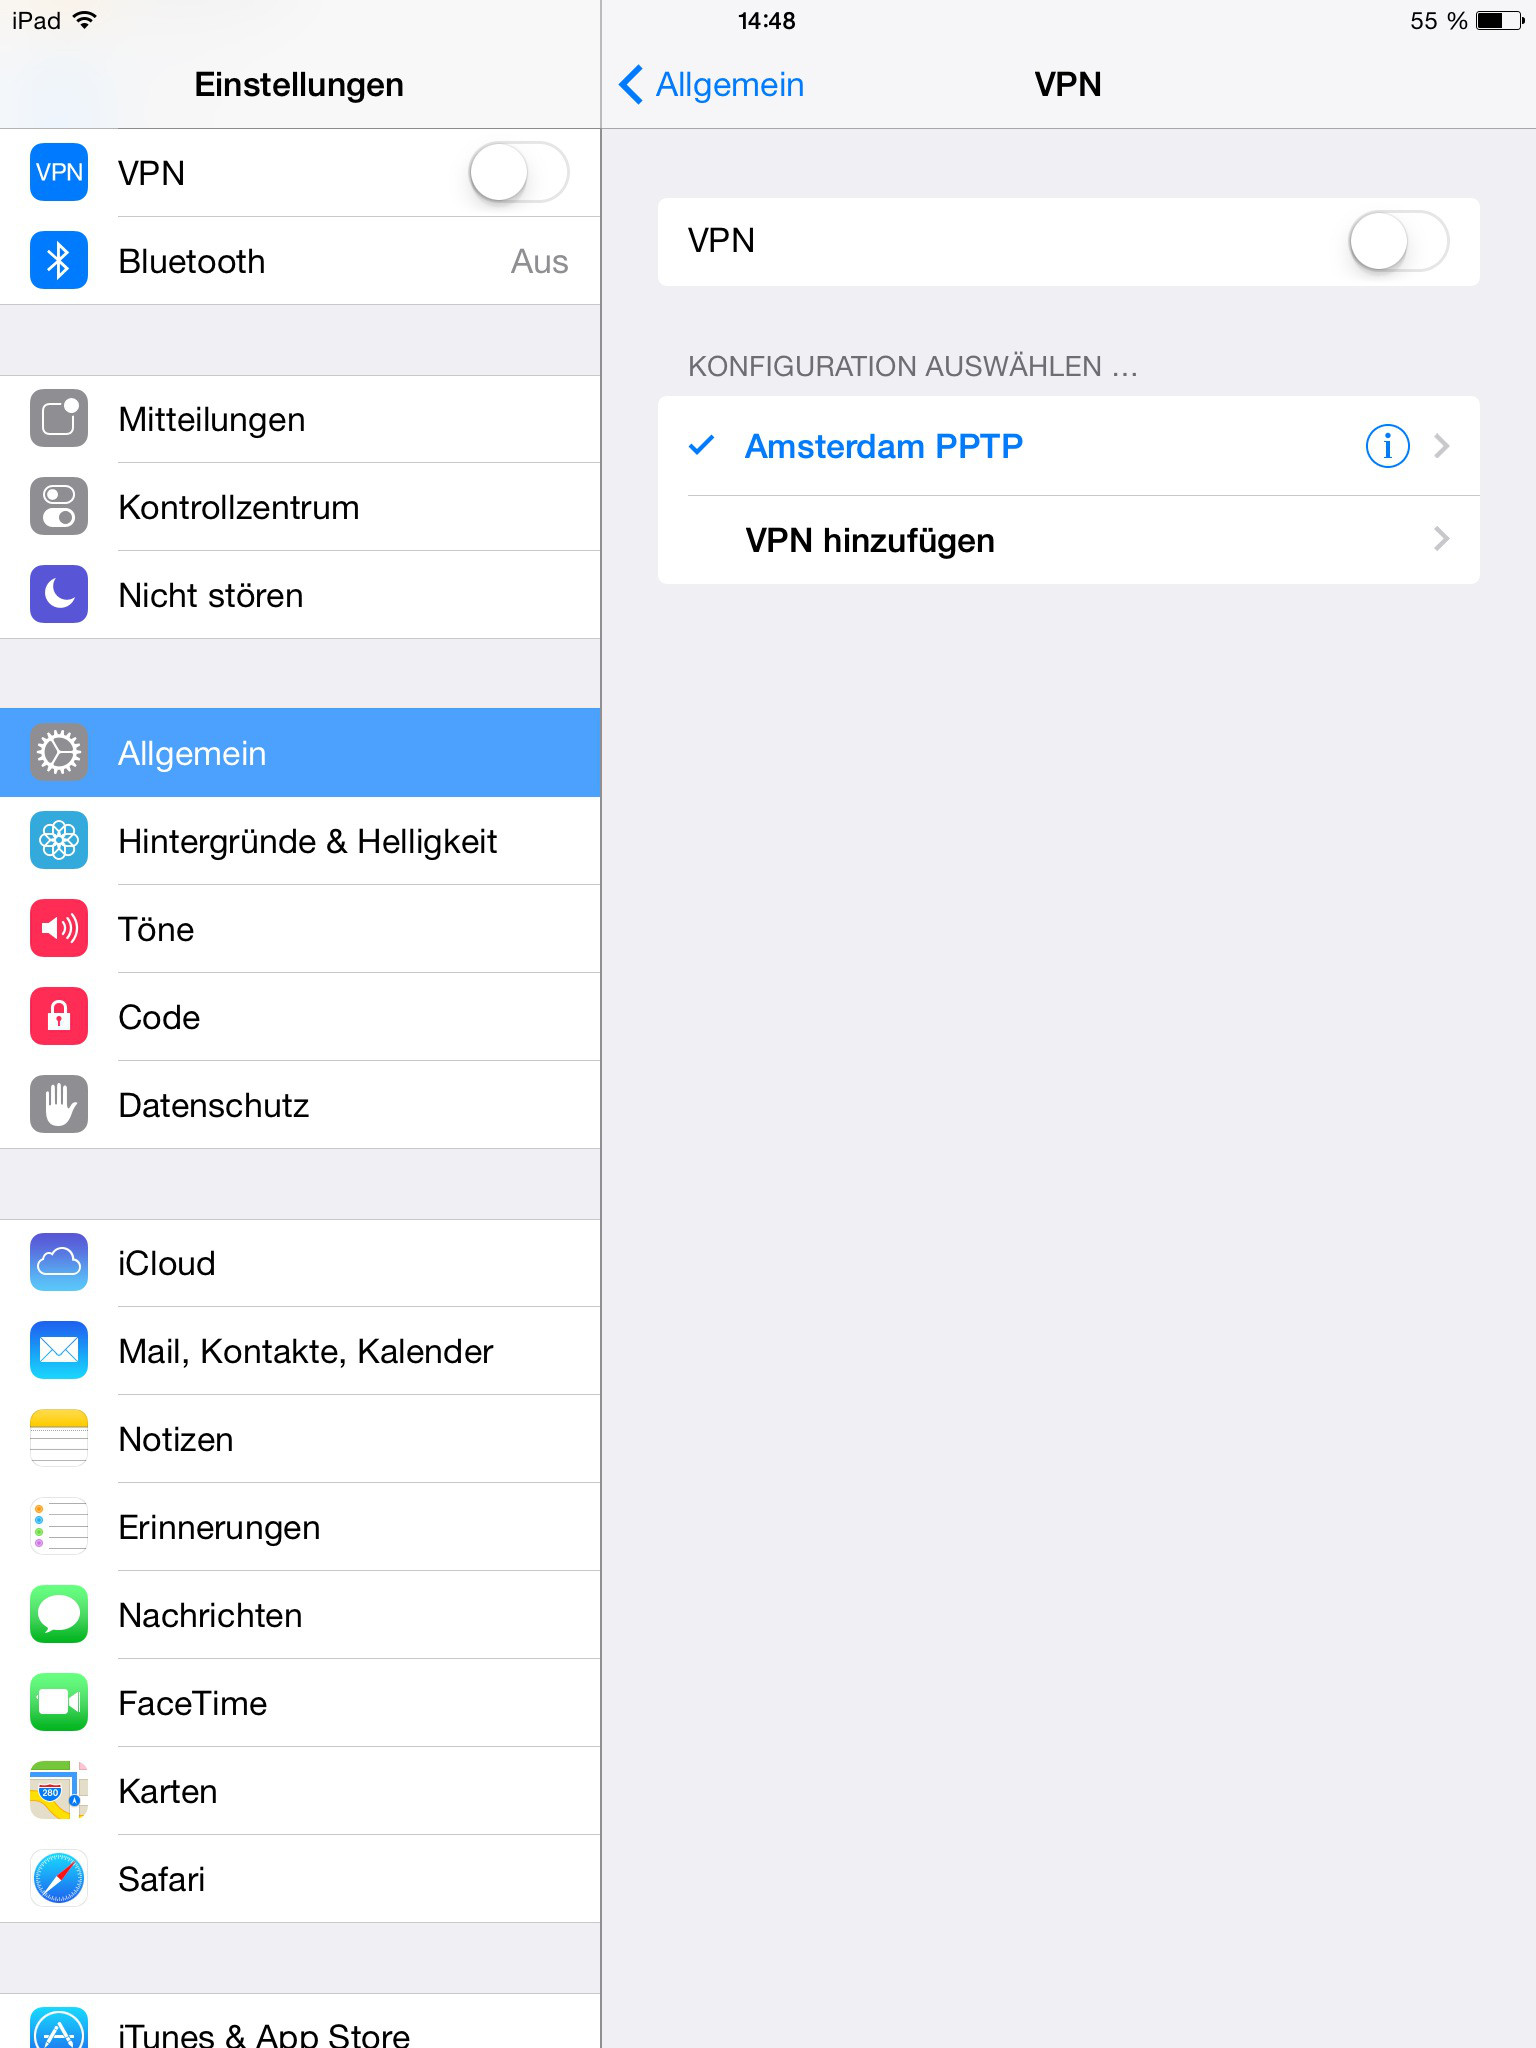 iPad (iOS), Einstellungen > Allgemein > VPN: VPN hinzufügen | IPsec mit iOS